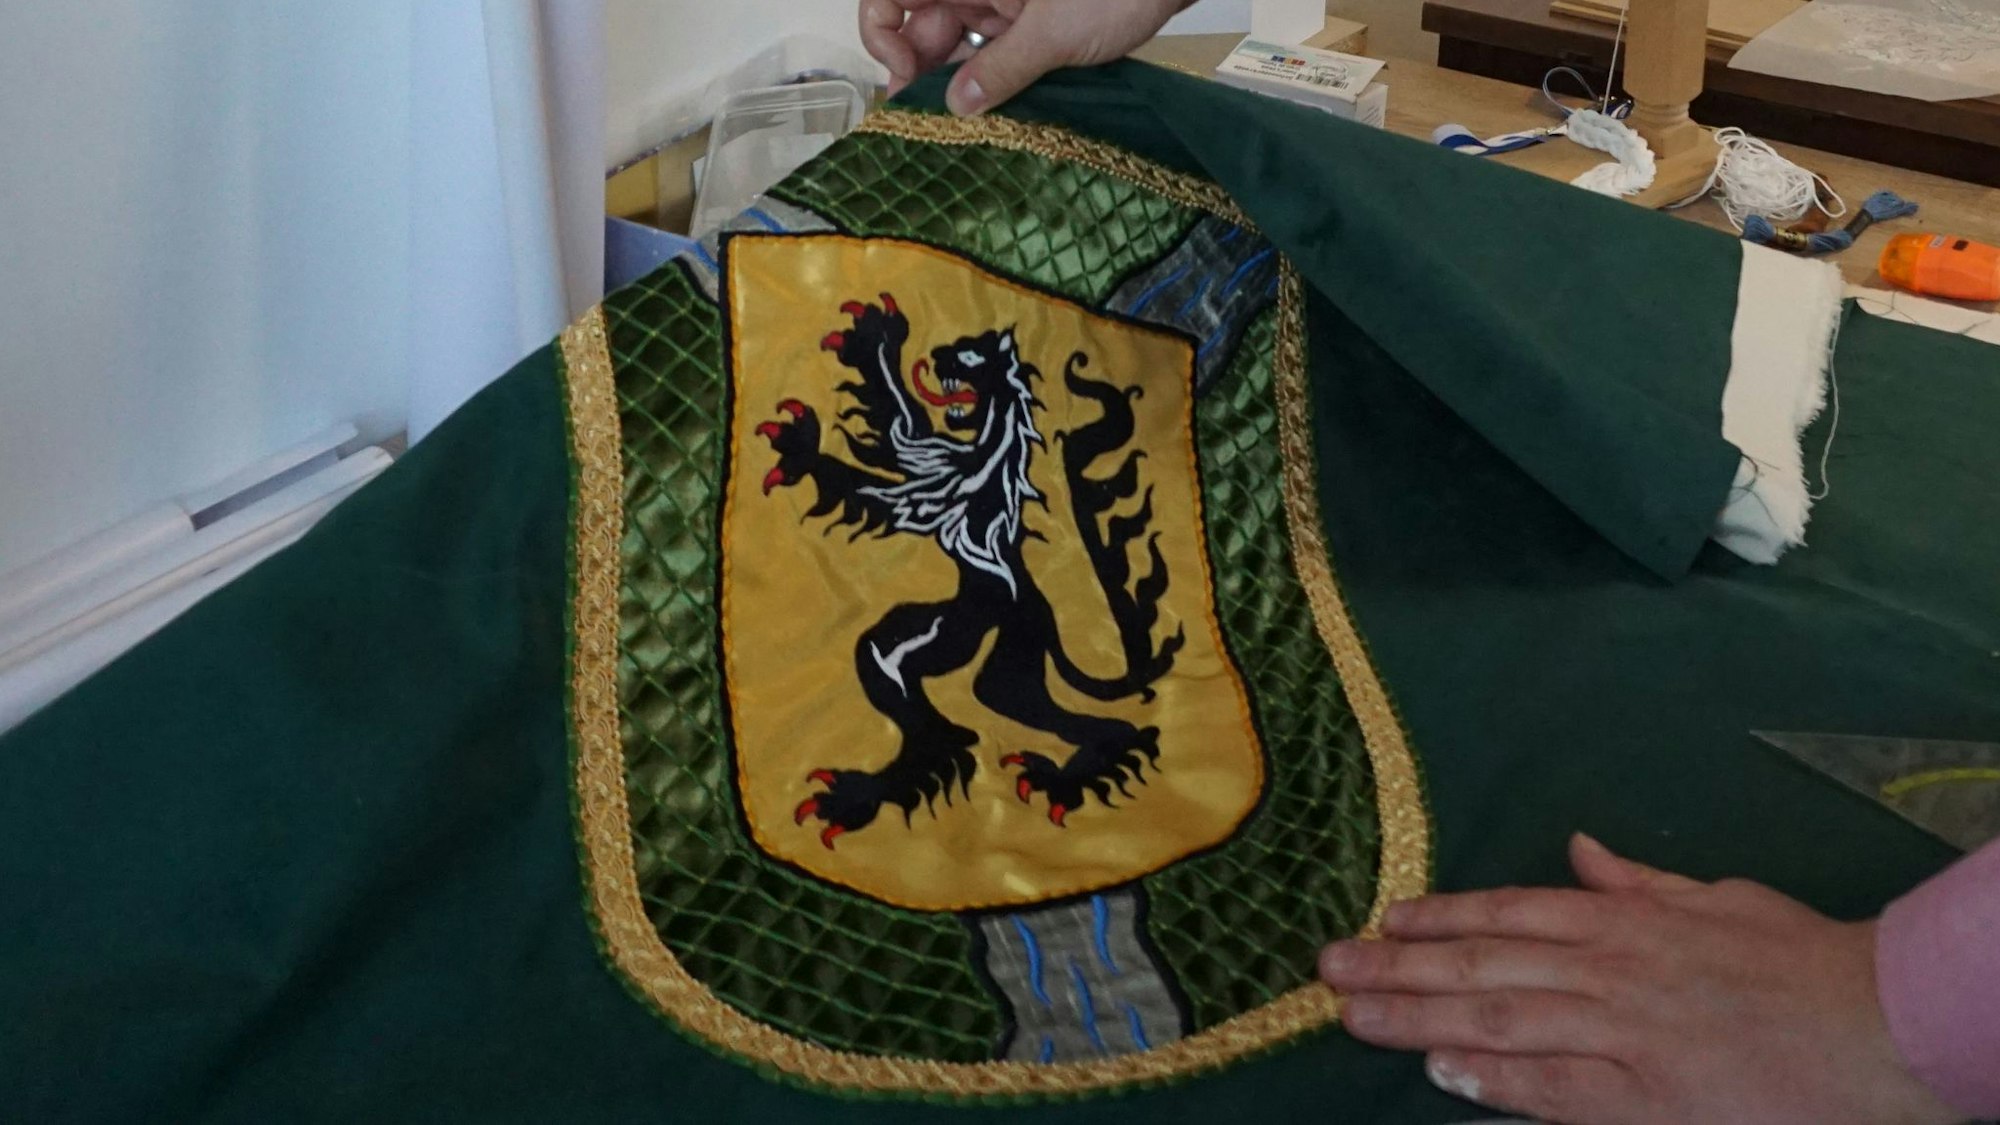 Das Wappen von Gemünd mit einem Löwen ist auf grünem Stoff zu sehen.